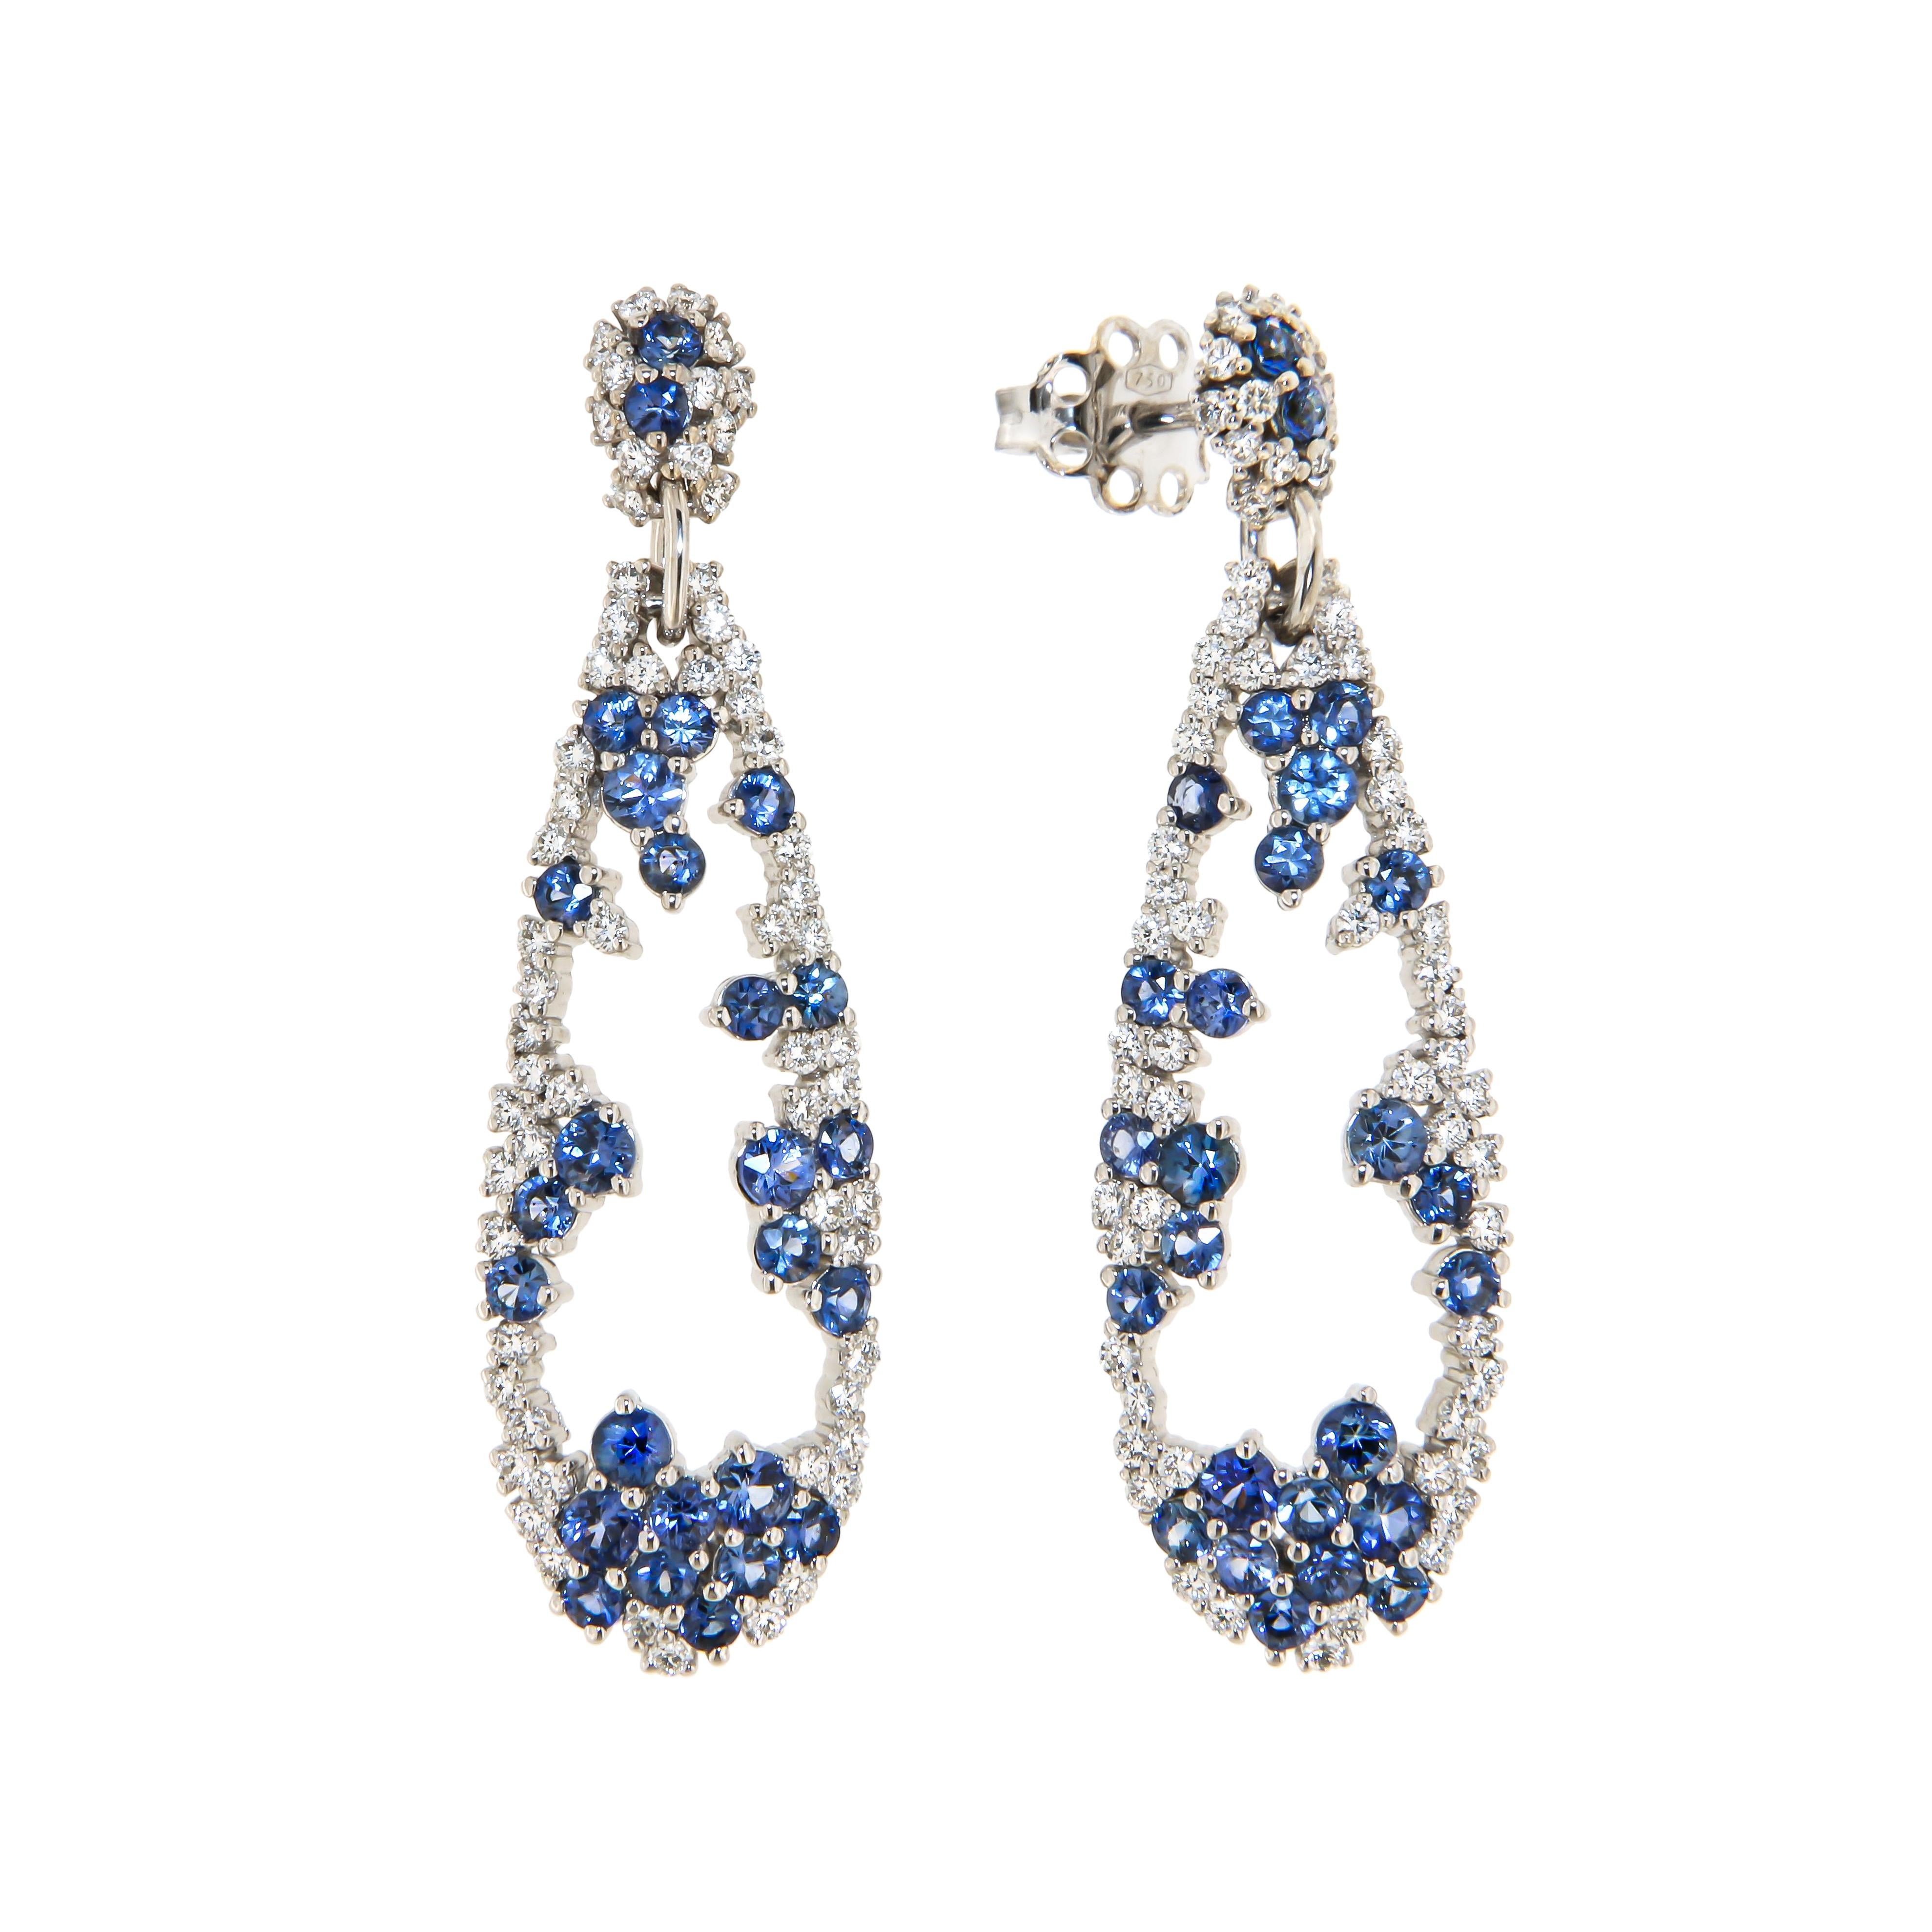 Modern Italian Dangle Blue Sapphire Diamond Cocktail White 18k Gold Earrings for Her For Sale